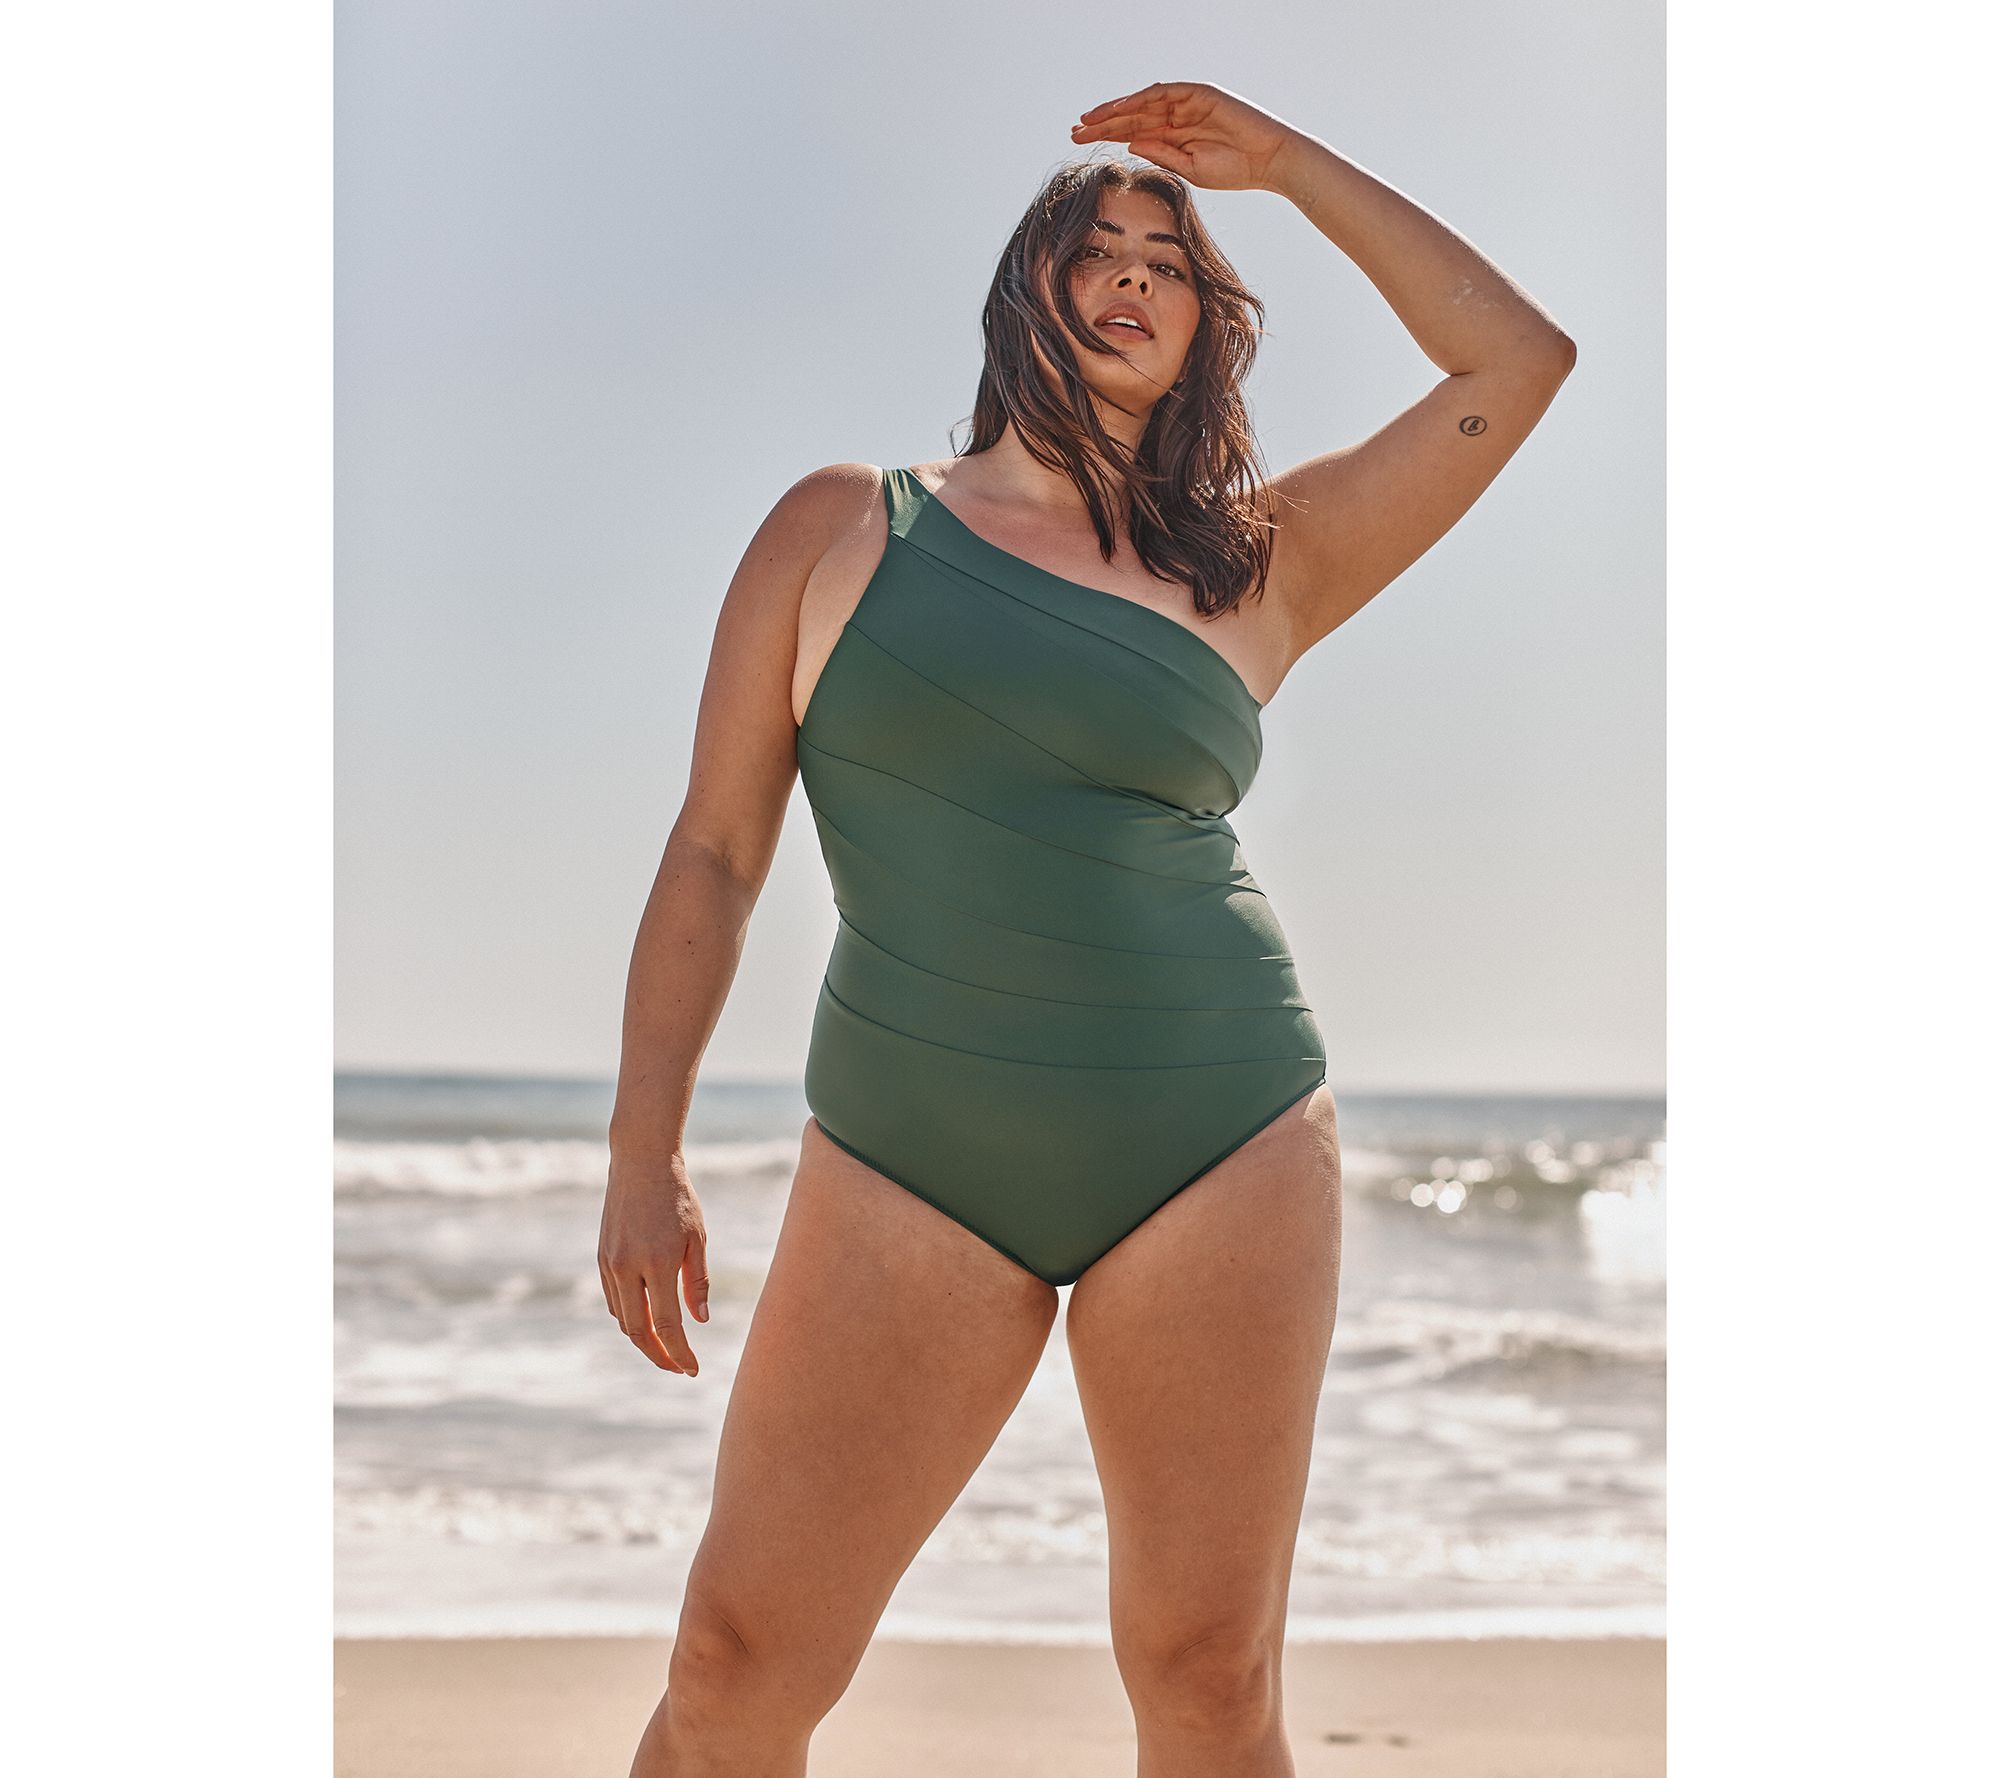 Honest Review: The Summersalt Sidestroke Swimsuit